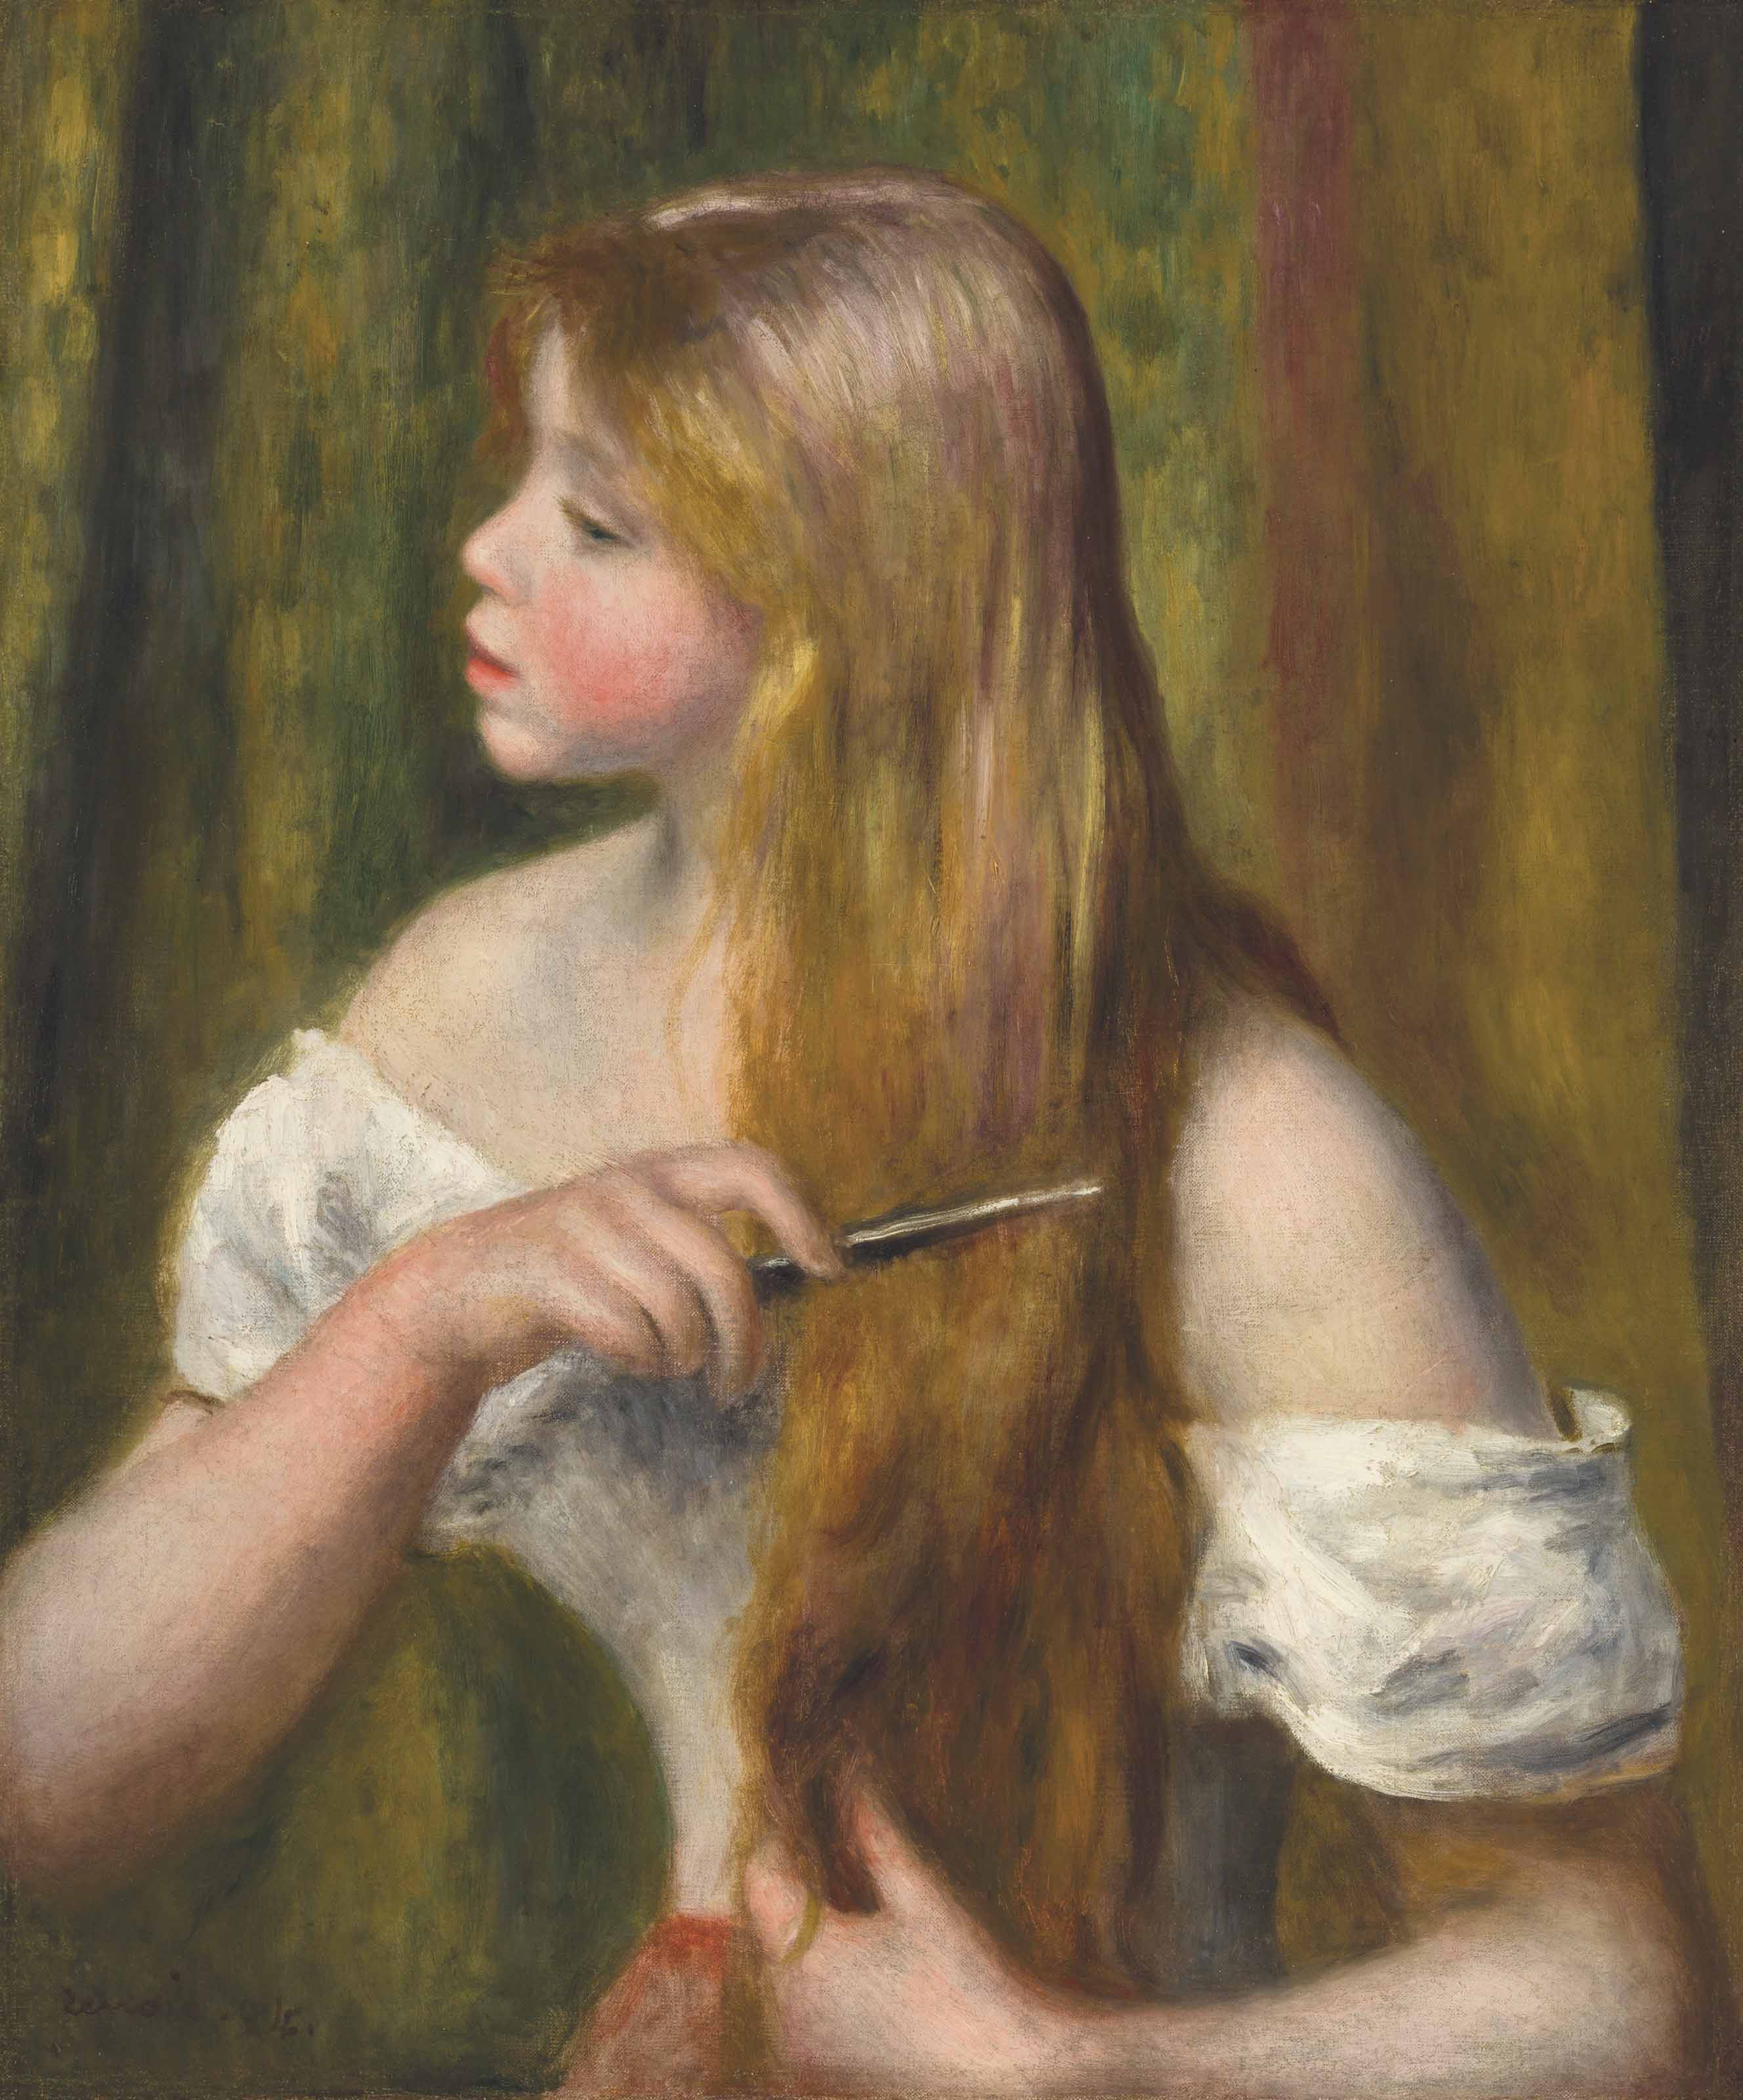 Blonde girl combing her hair, painting by Pierre Auguste Renoir